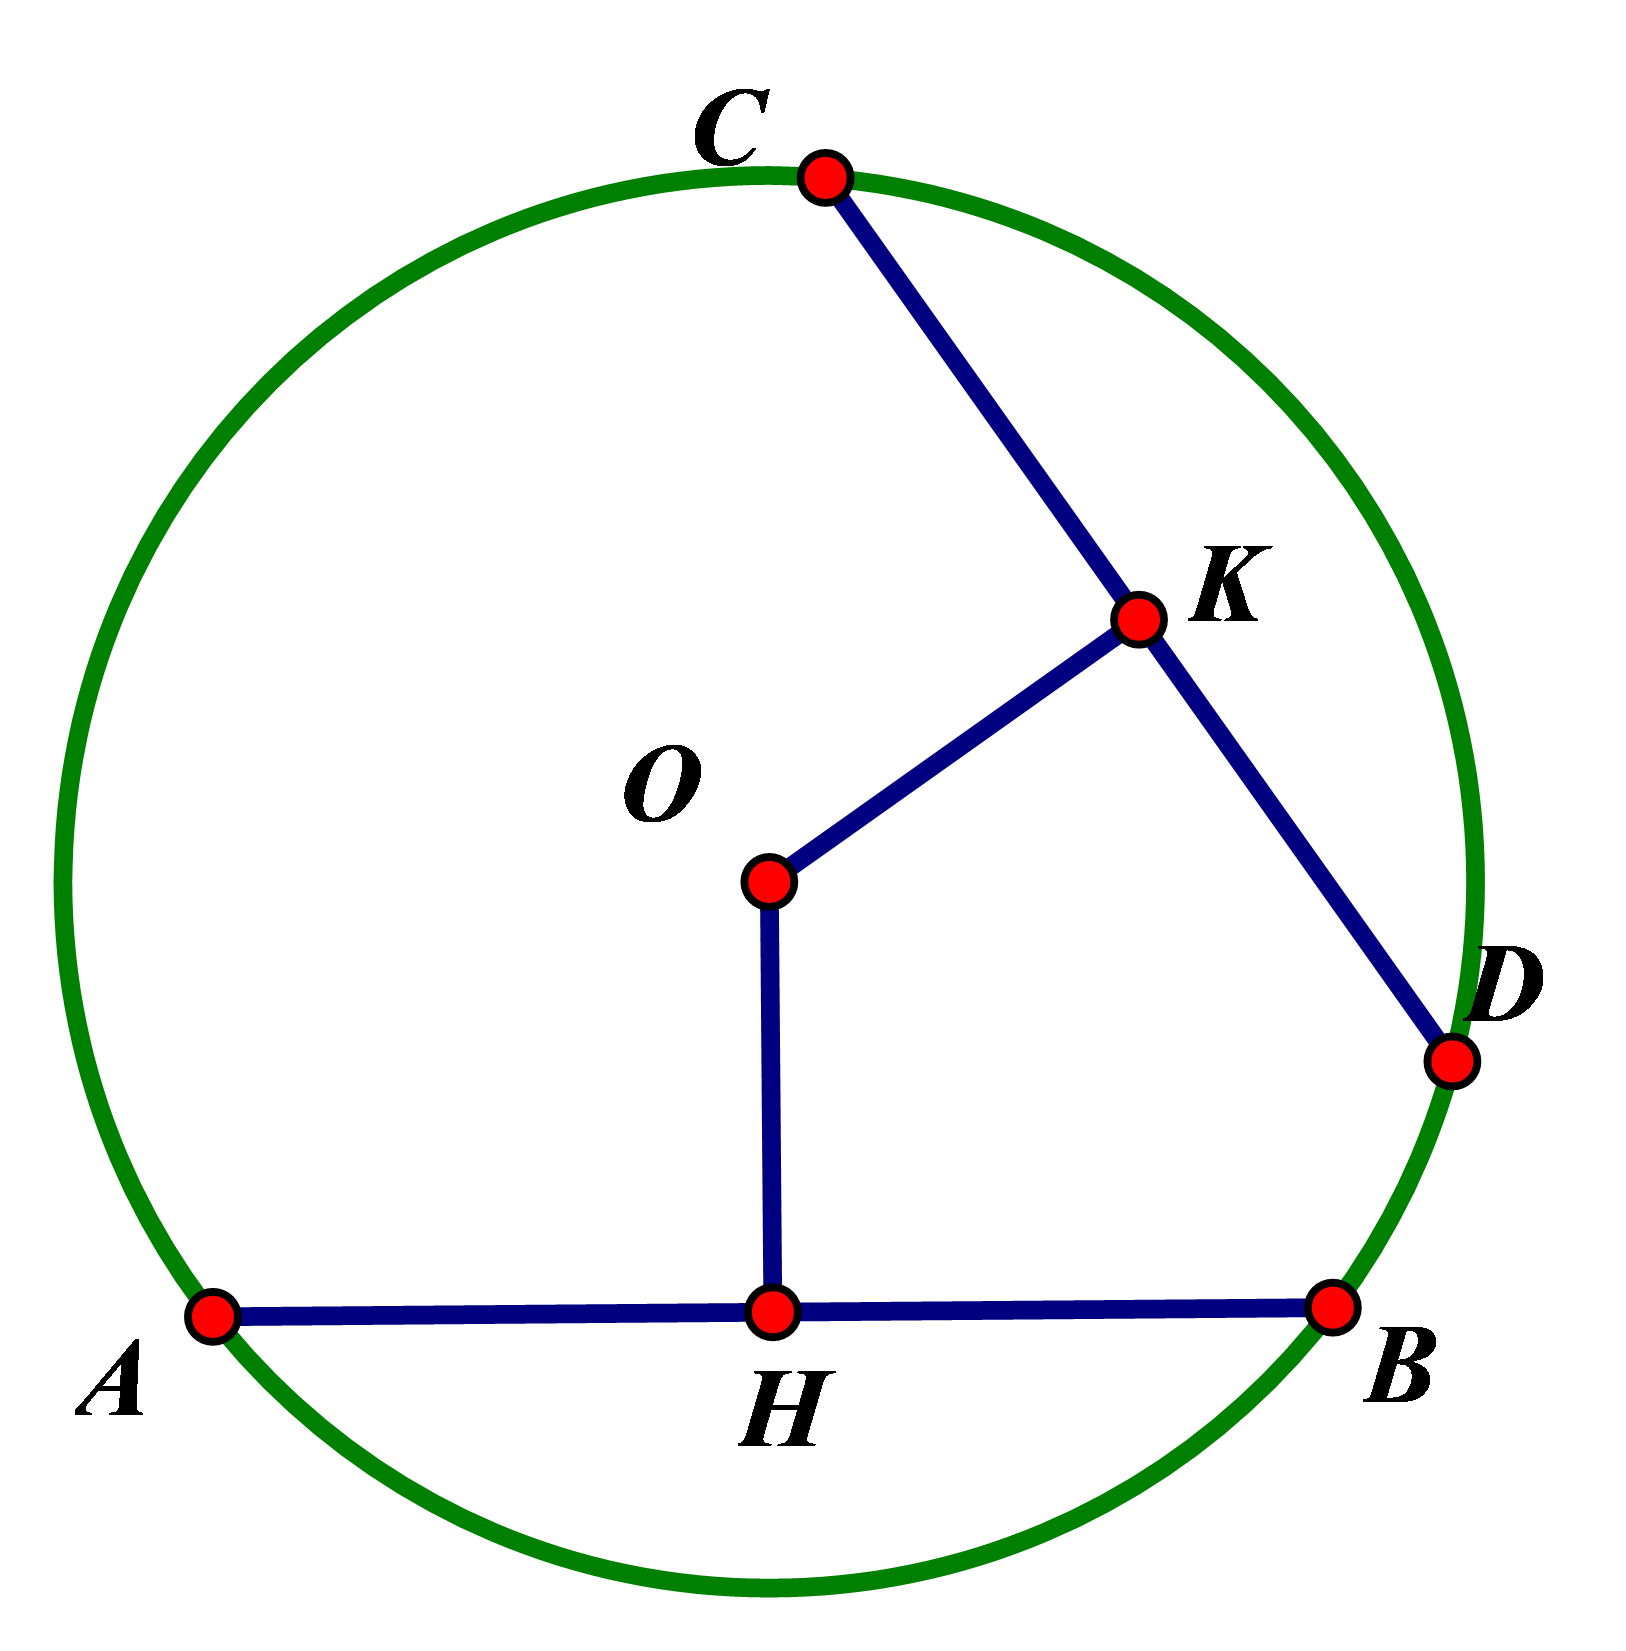 Hình minh họa Liên hệ giữa dây và khoảng cách từ tâm đến dây trong đường tròn